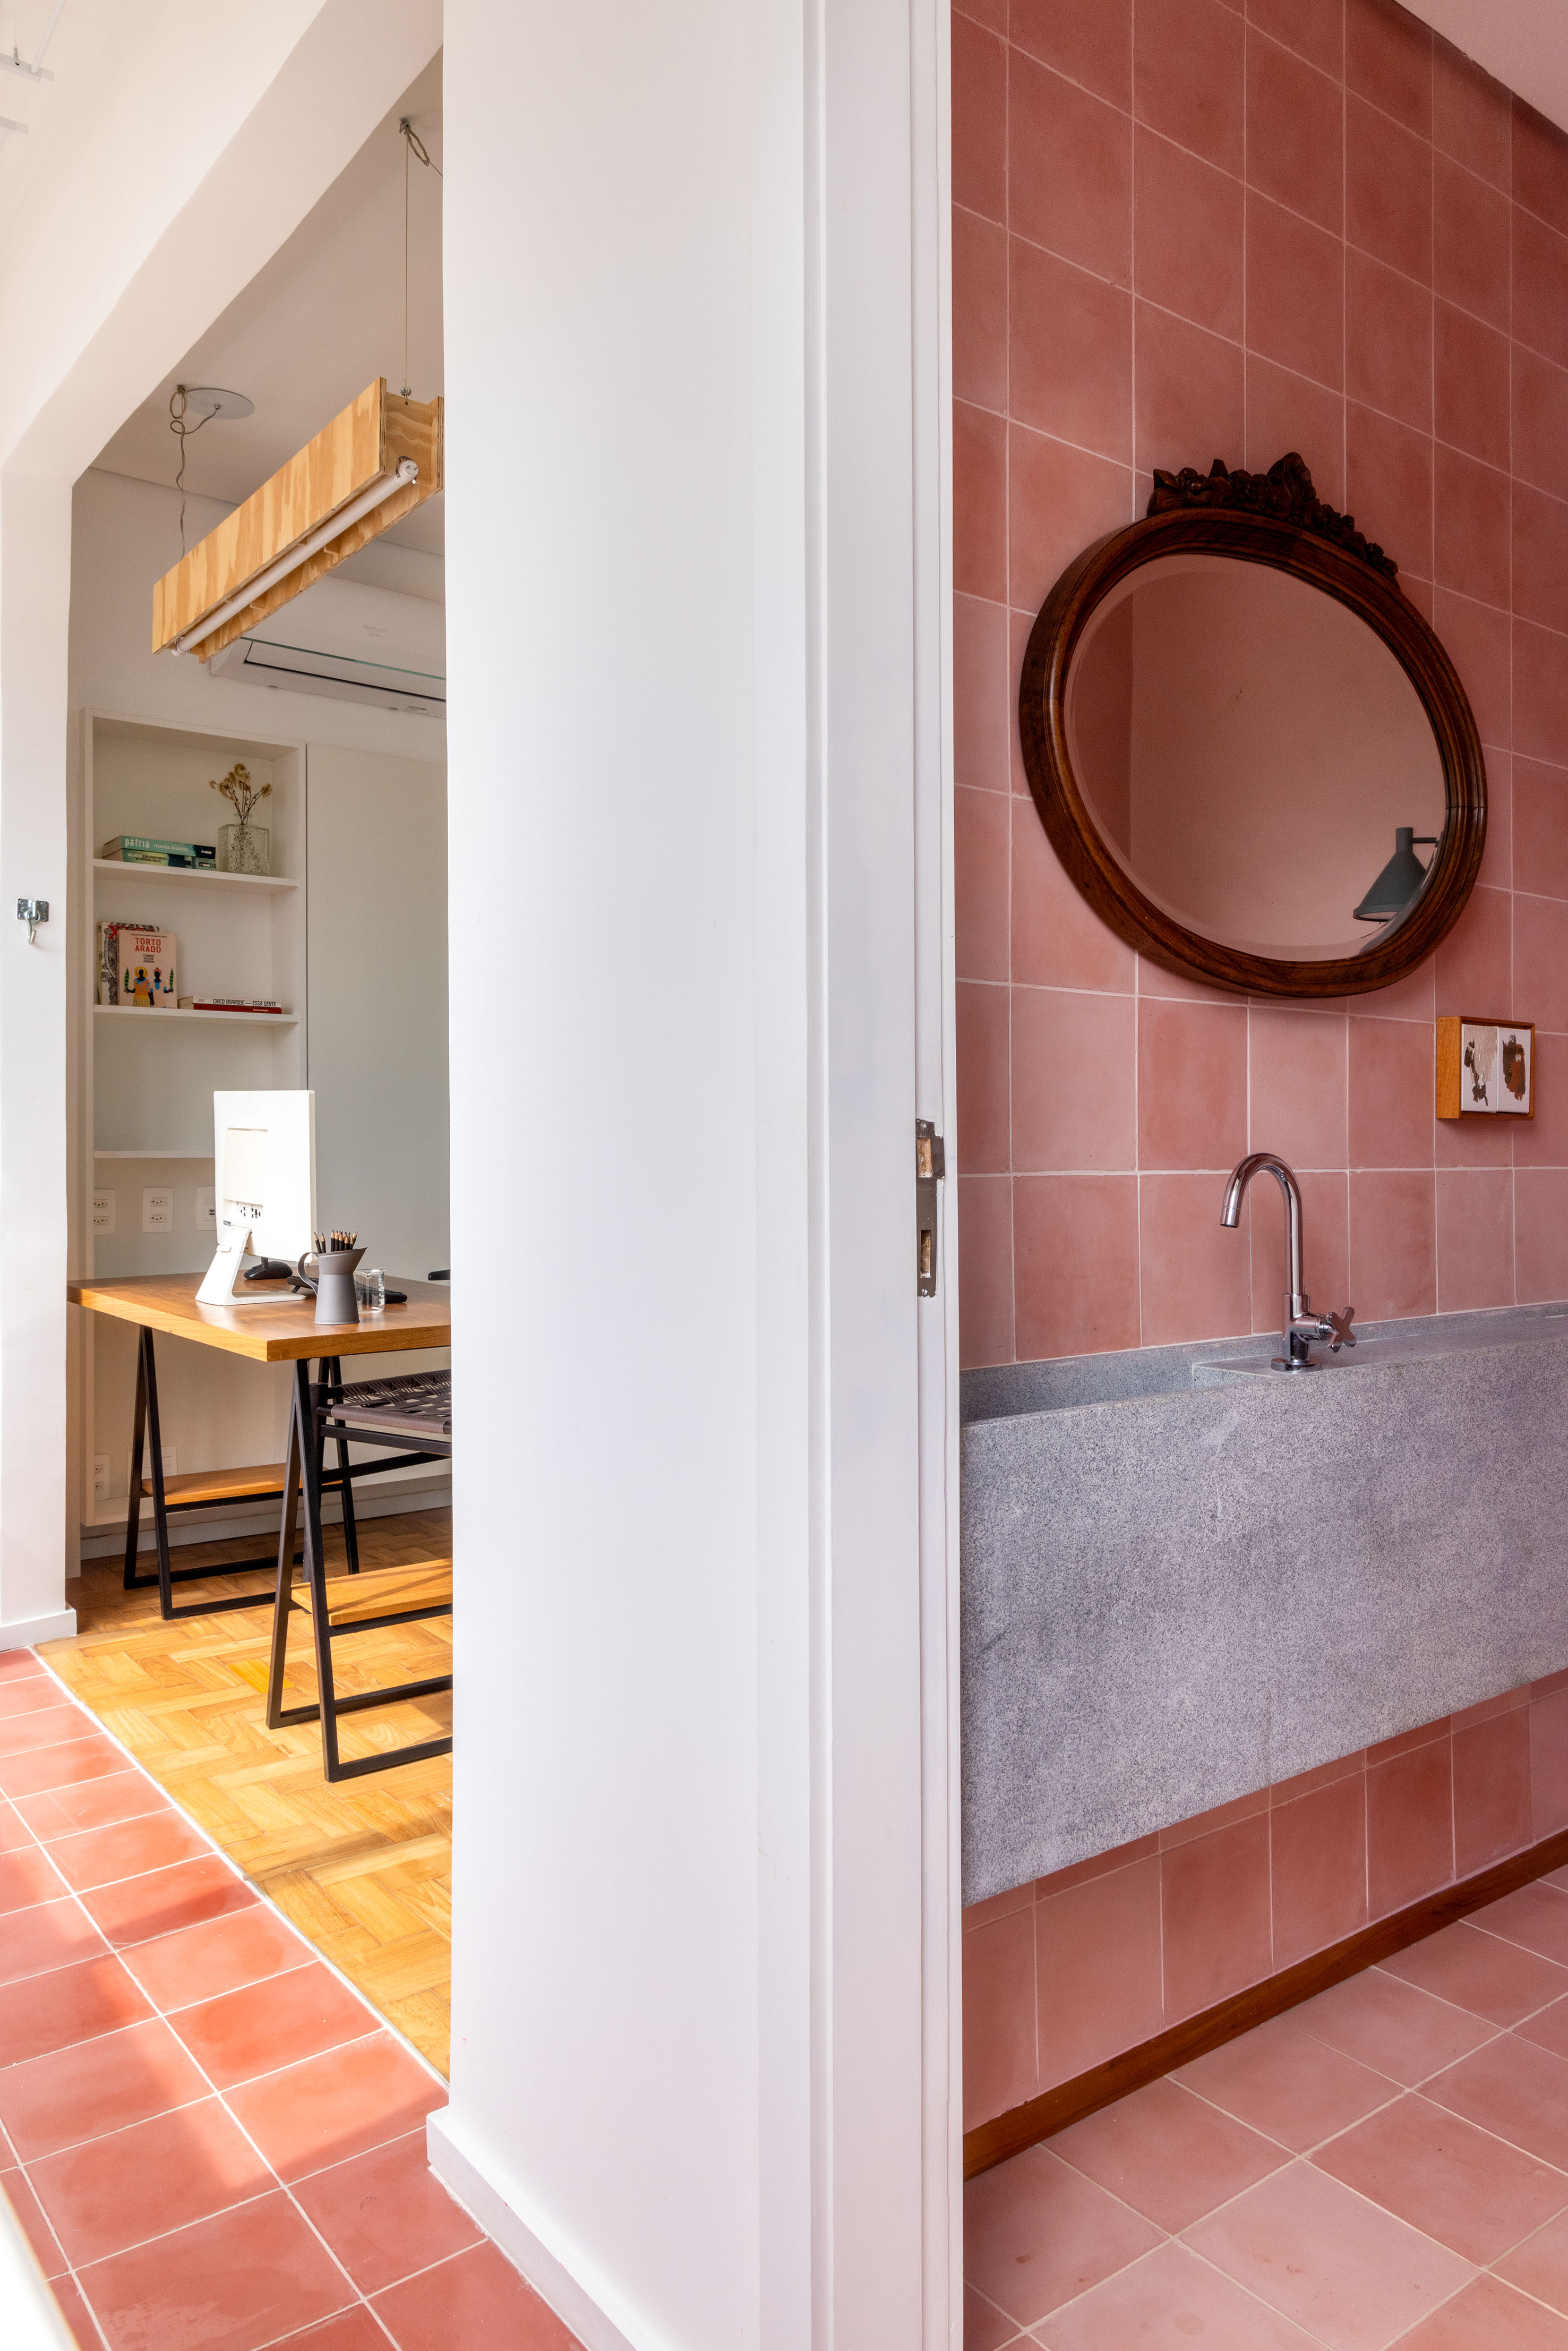 Ladrilhos hidráulicos trazem charme vintage e cor à apê de 90 m². Projeto de Ana Neri. Na foto, lavabo rosa, cuba esculpida, espelho redondo.